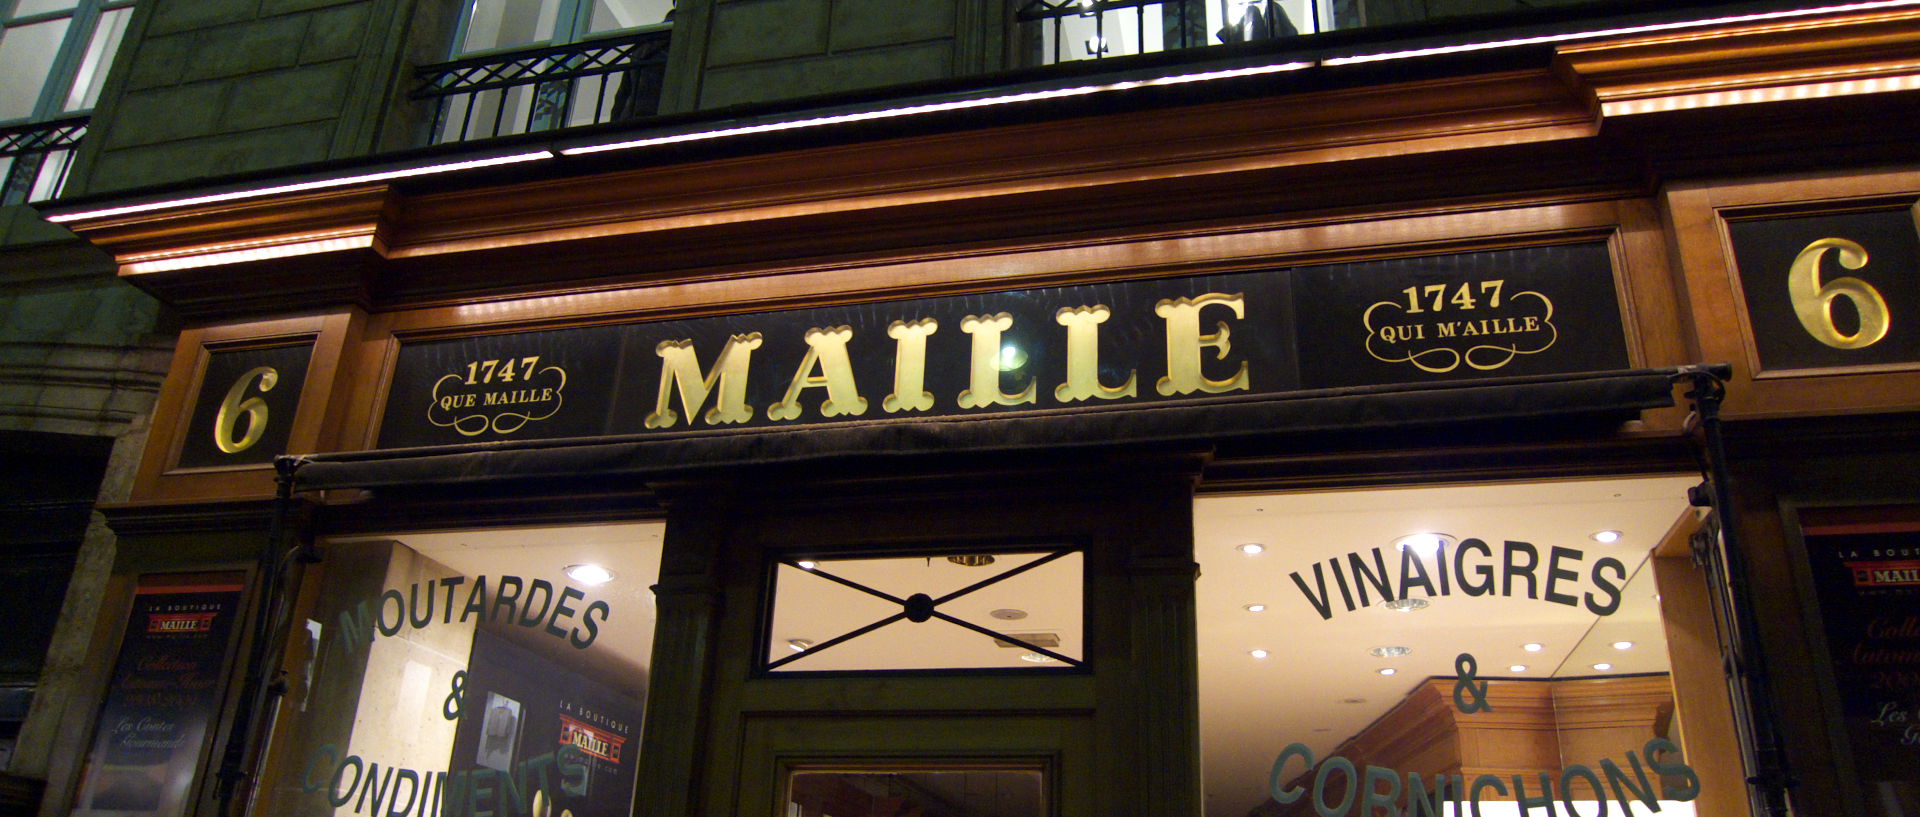 Mardi 18 novembre 2008 (3), place de la Madeleine, à Paris.